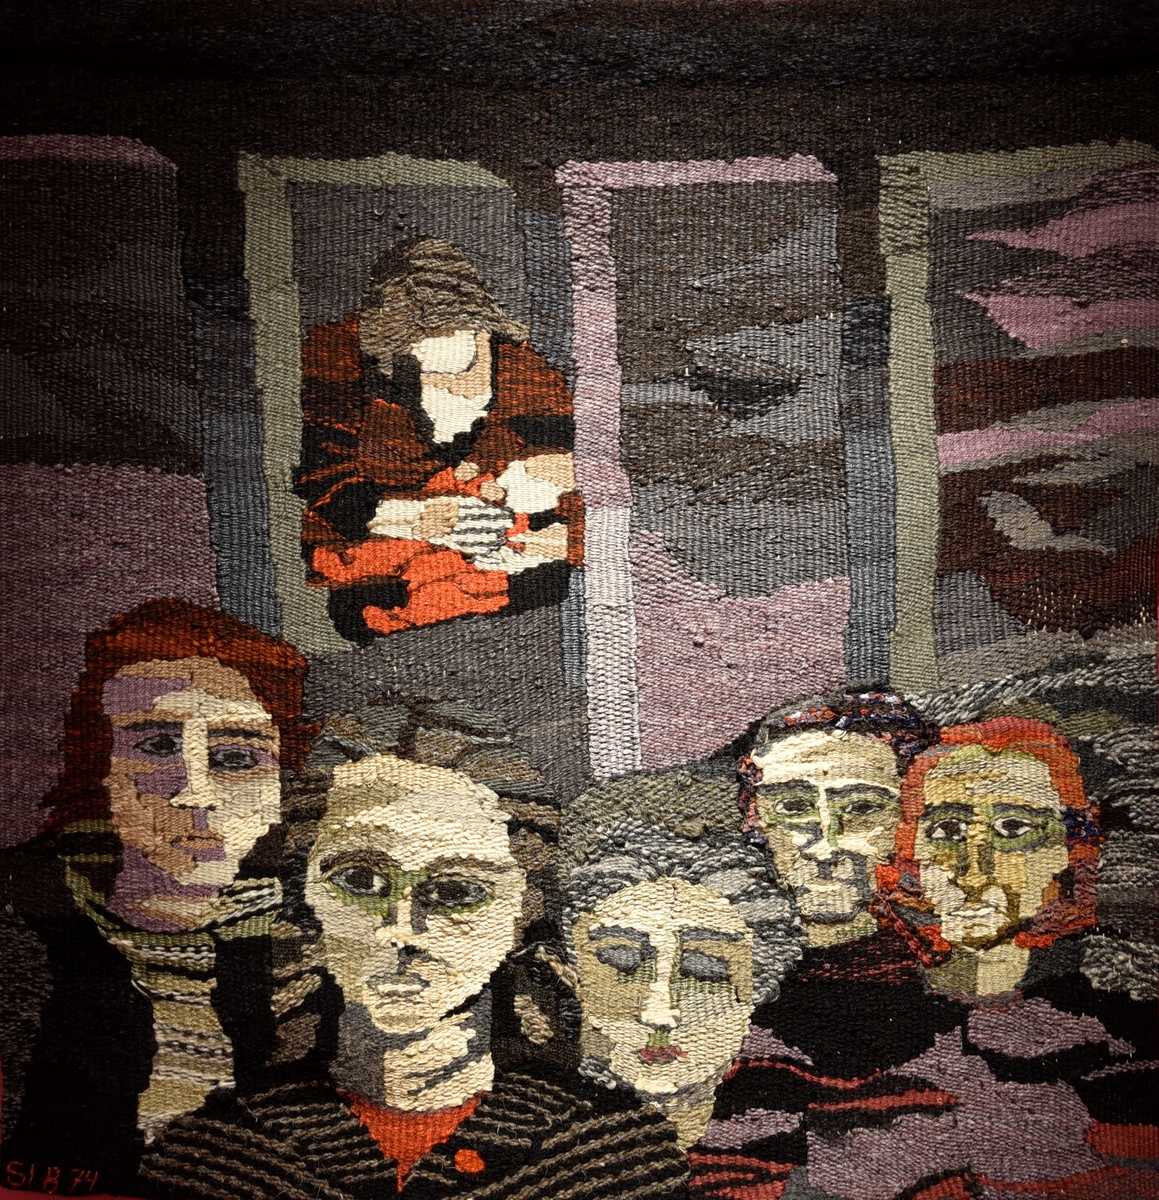 I förgrunden syns fem kvinnohuvuden en face. I bakgrunden syns en kvinna med ett barn mot en fond av fyra höghus. Färgerna går i grått, rött, vitt och rödbrunt.